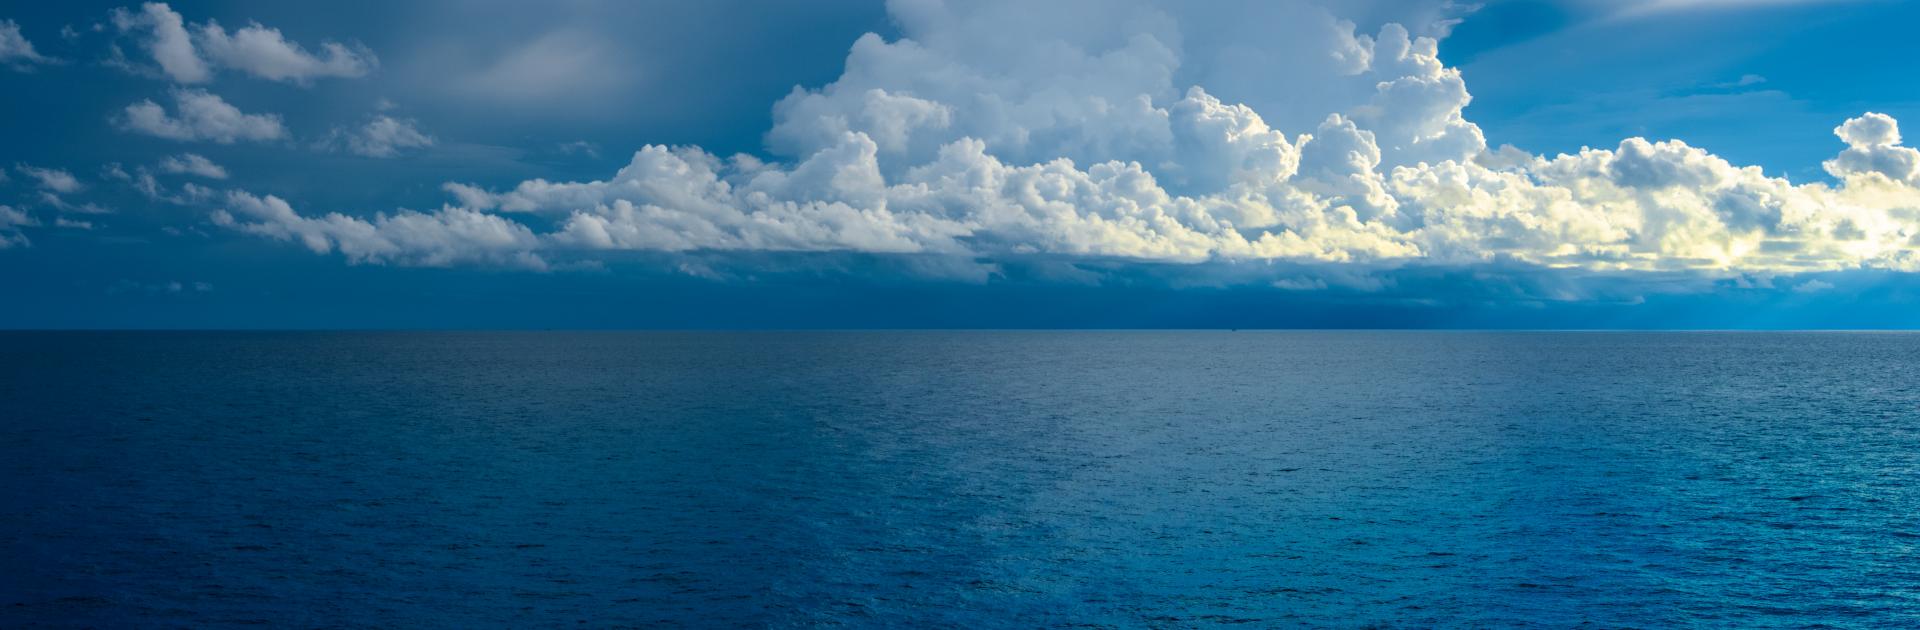 Deep blue Atlantic Ocean with clouds